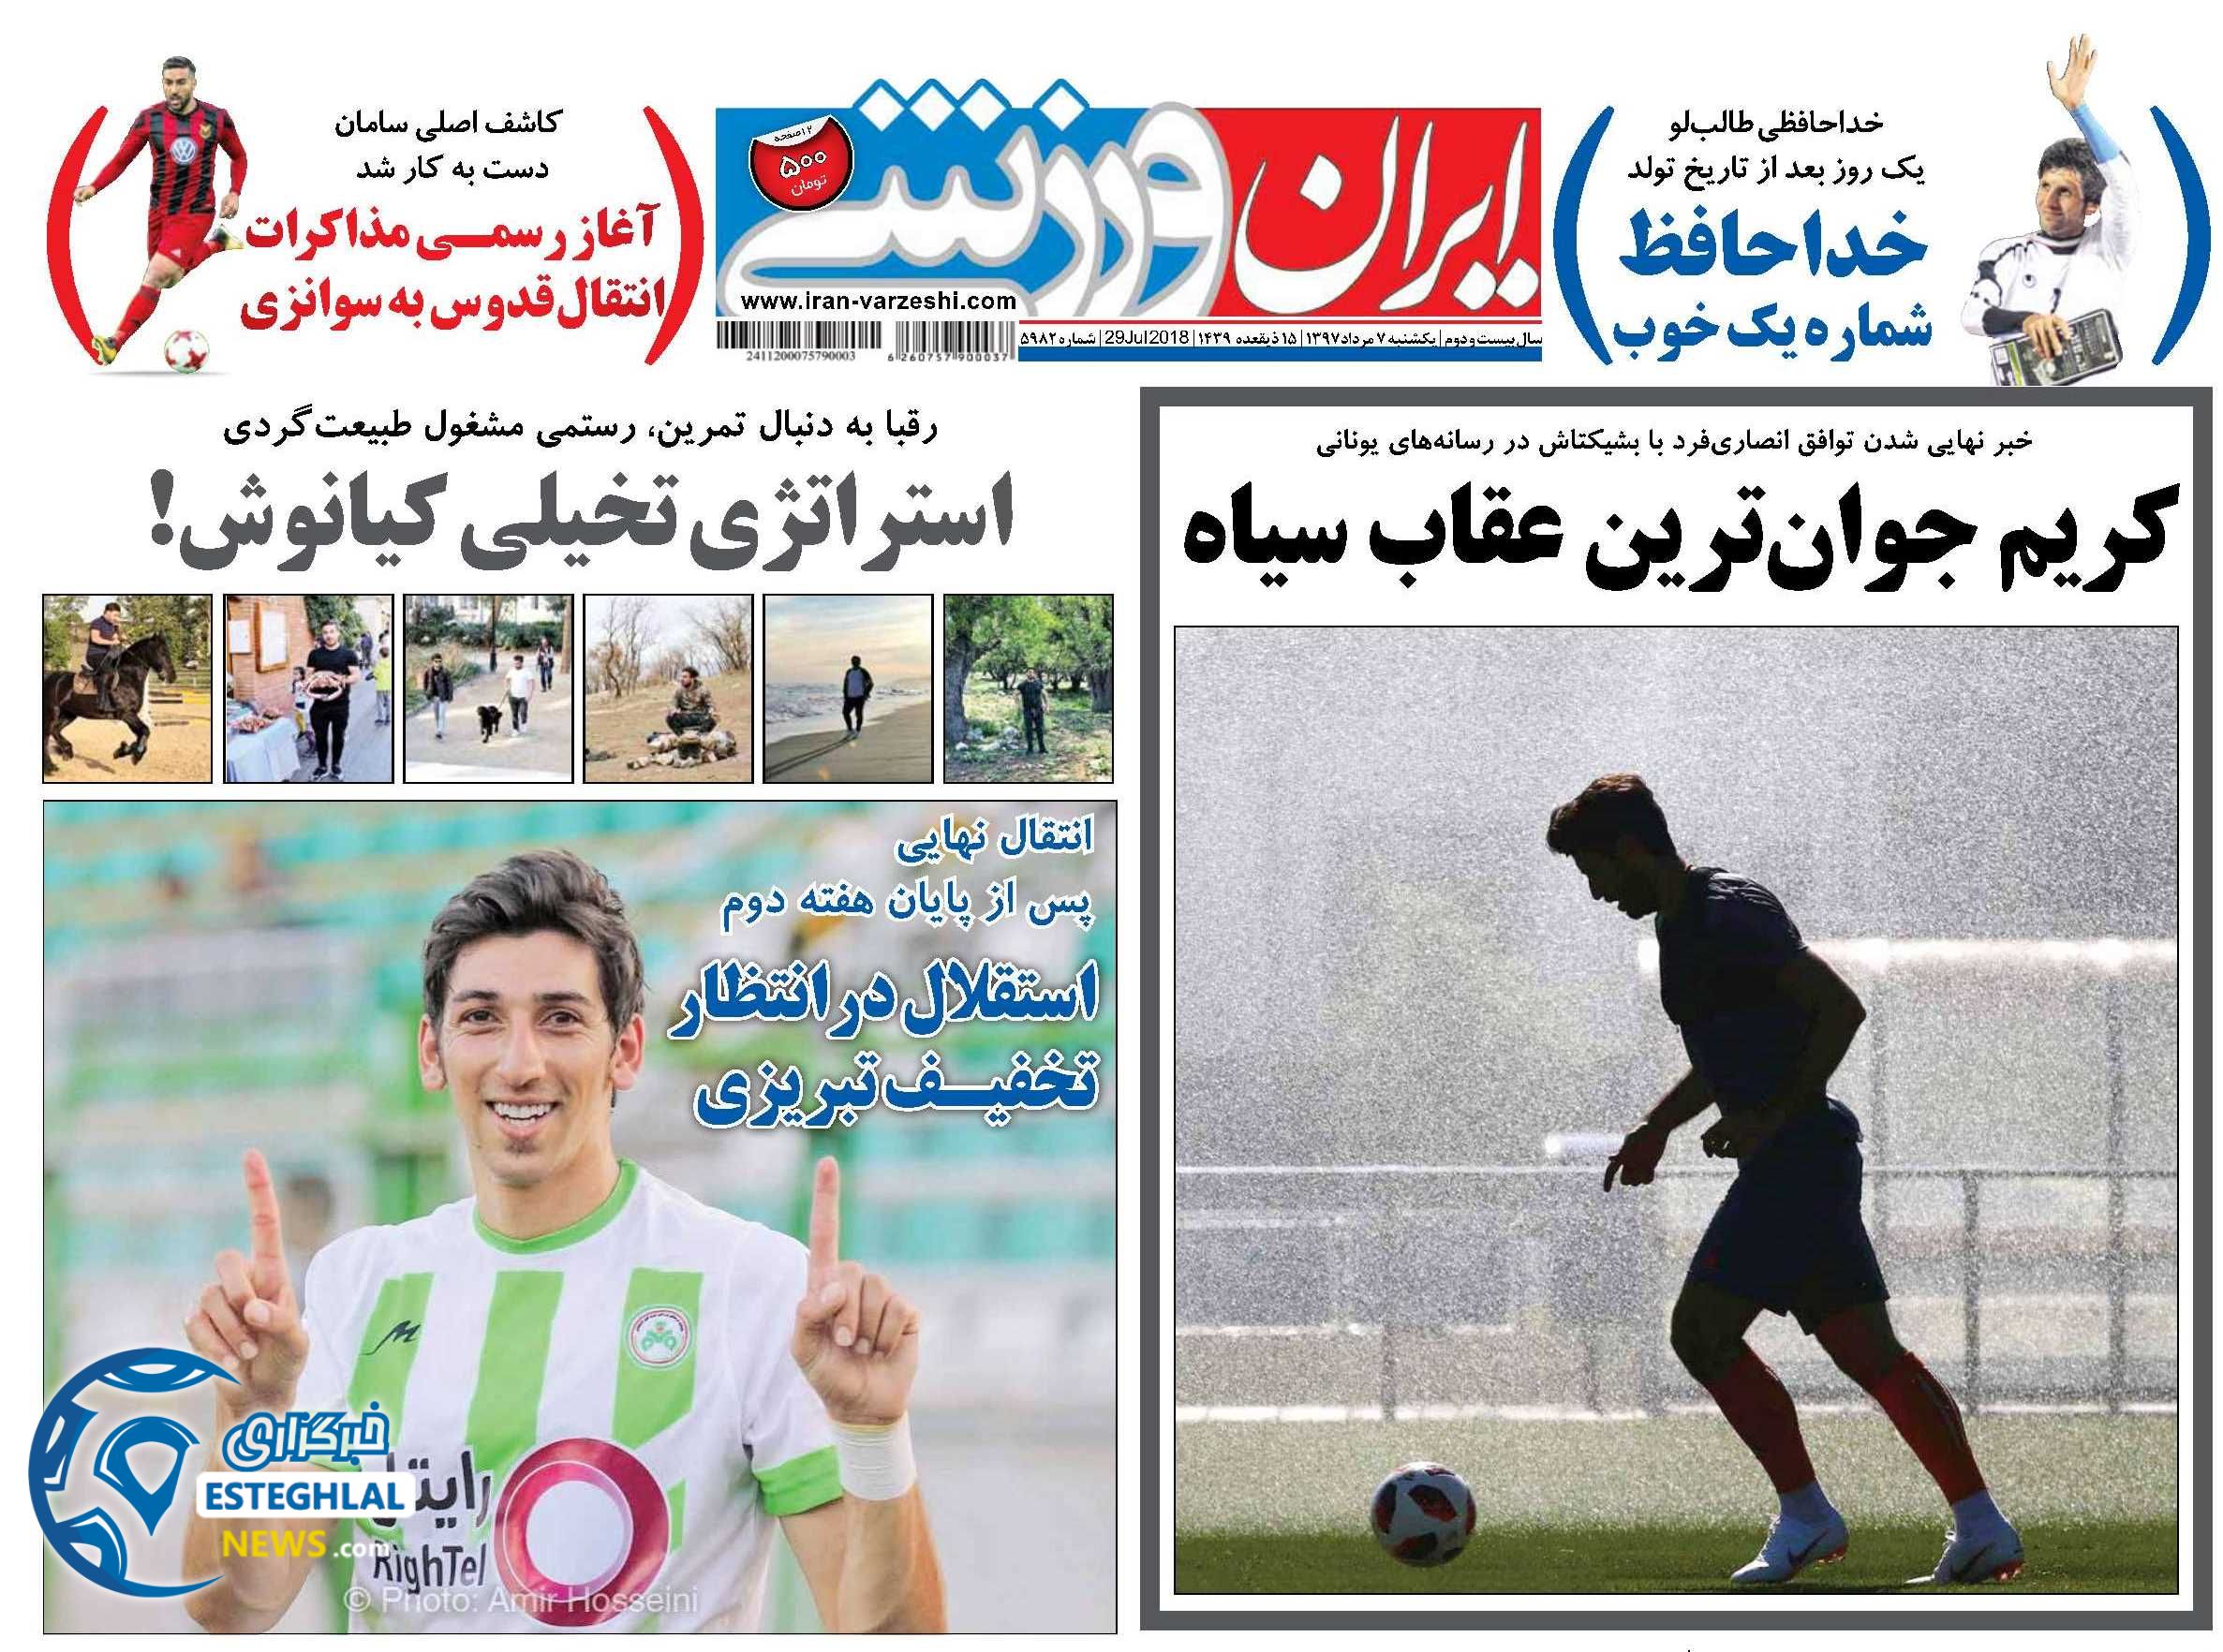 روزنامه ایران ورزشی یکشنبه 7 مرداد 1397        